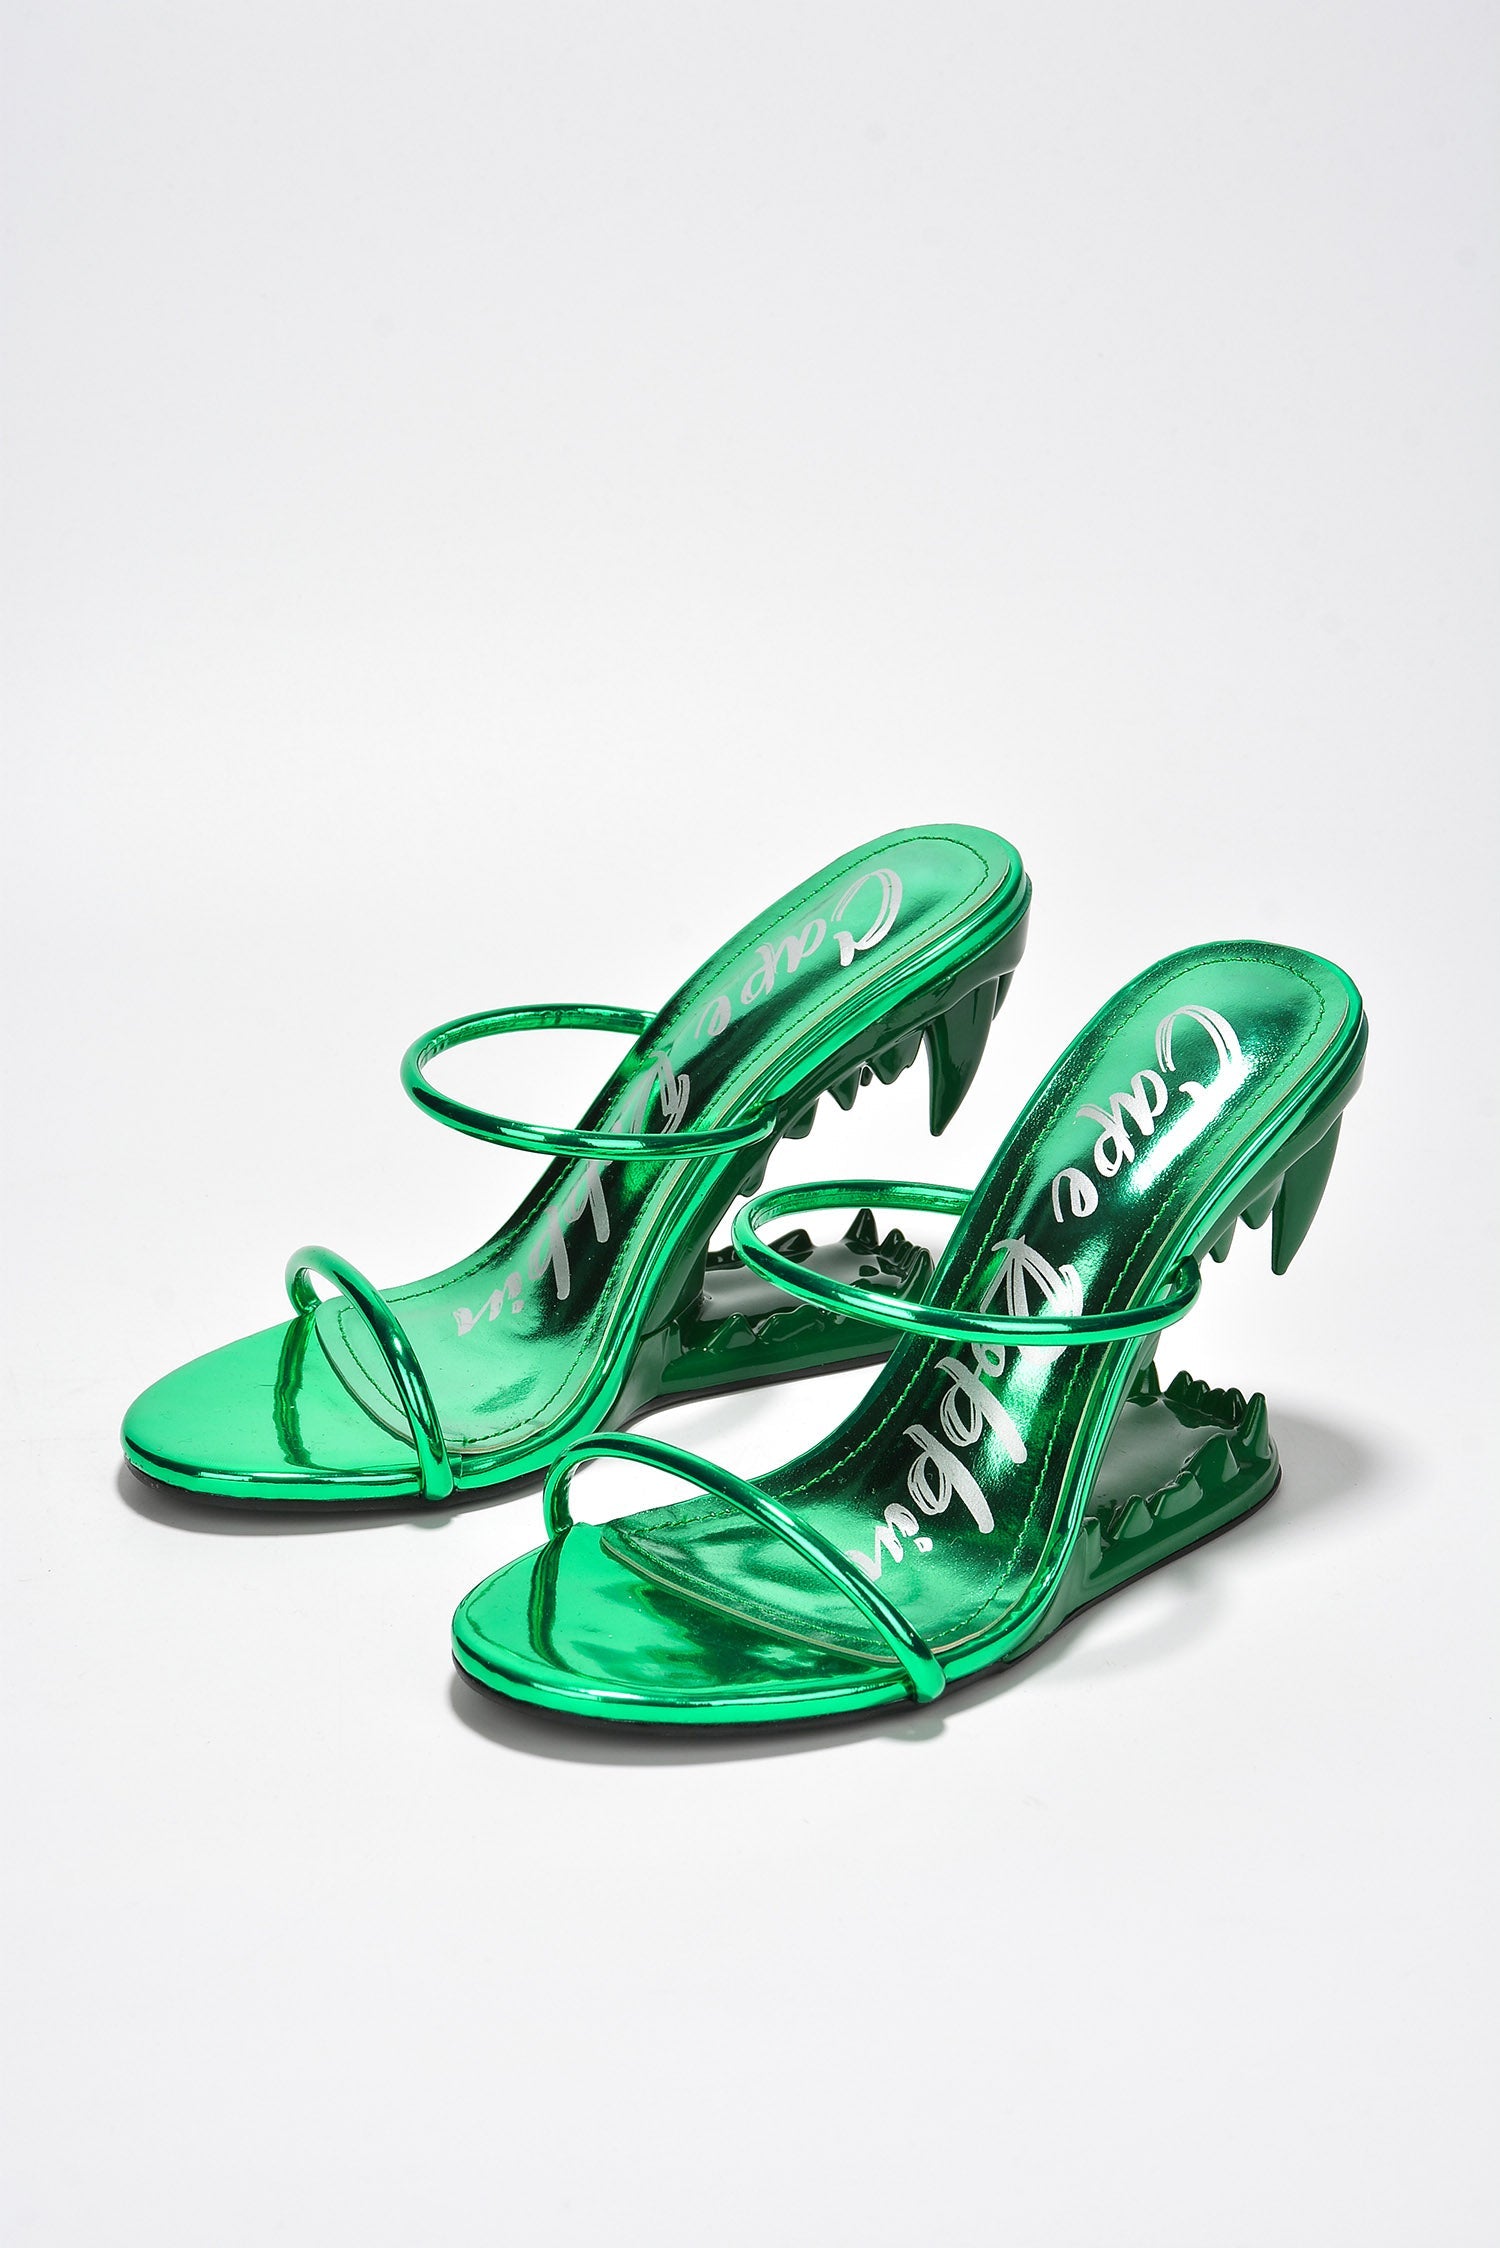 CHANEL, Shoes, Chanel Cruise 29 Transparentblue Cc Slides